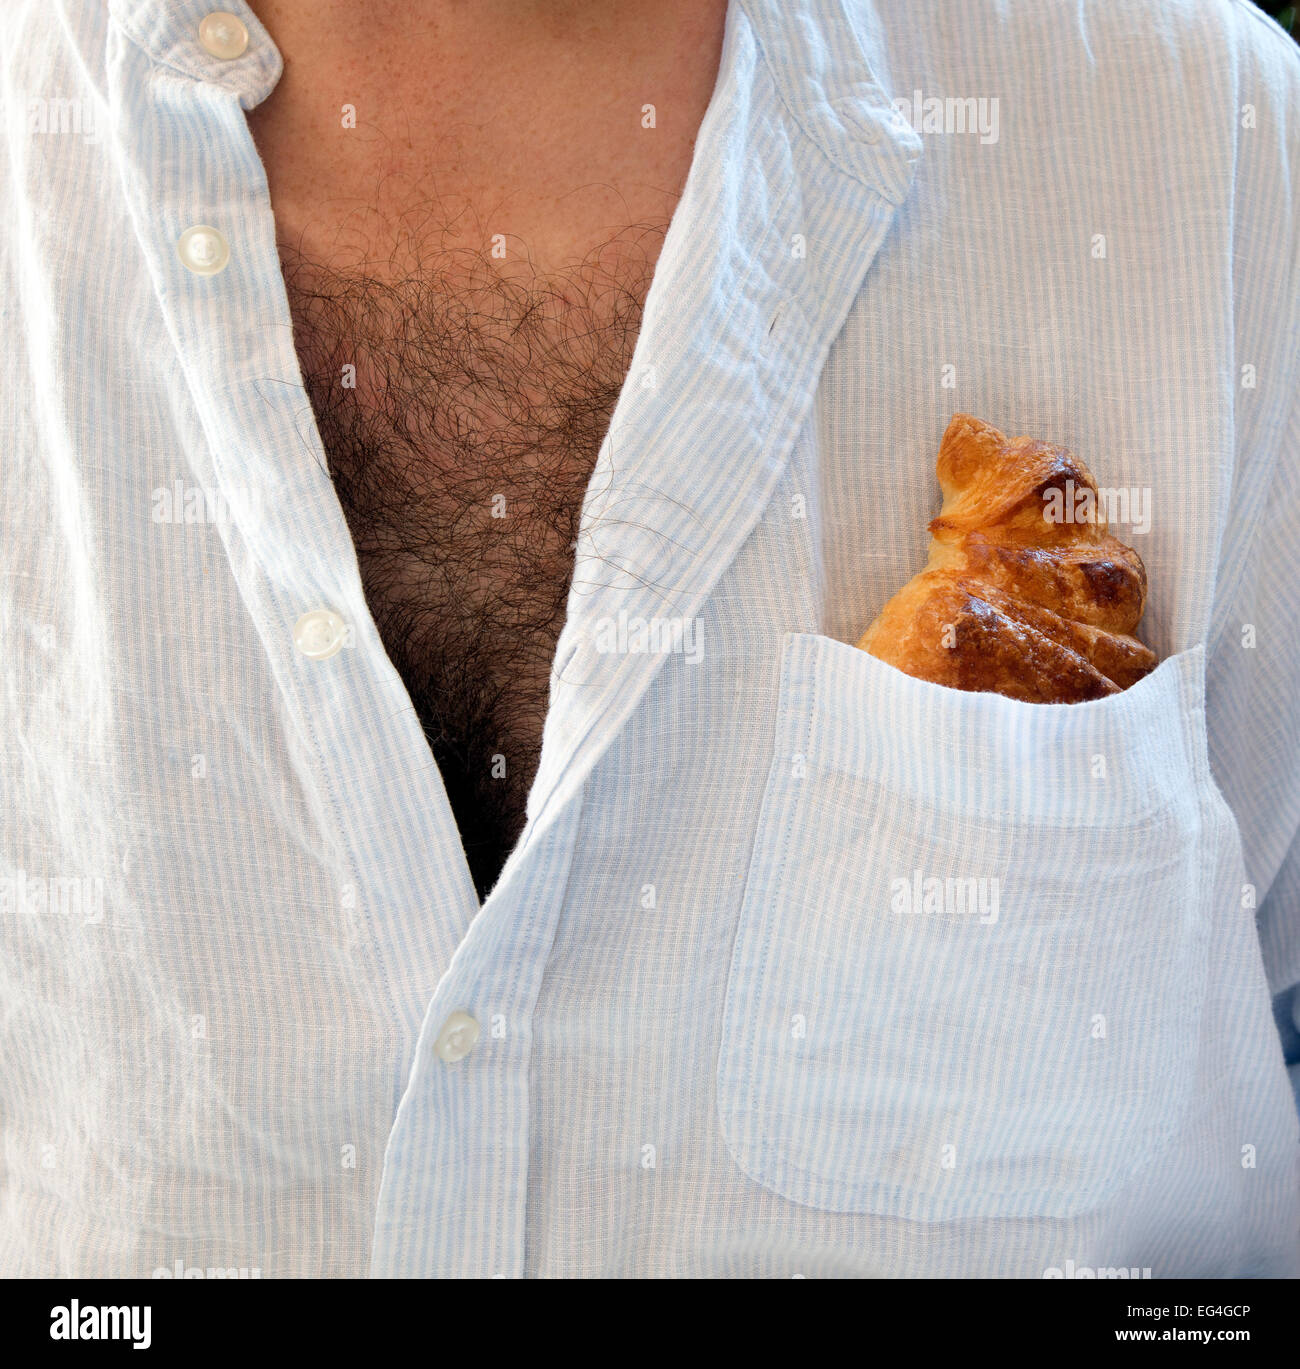 Mann mit offenen Hemd und Brust Haare und Croissant in Hemdtasche Stockfoto